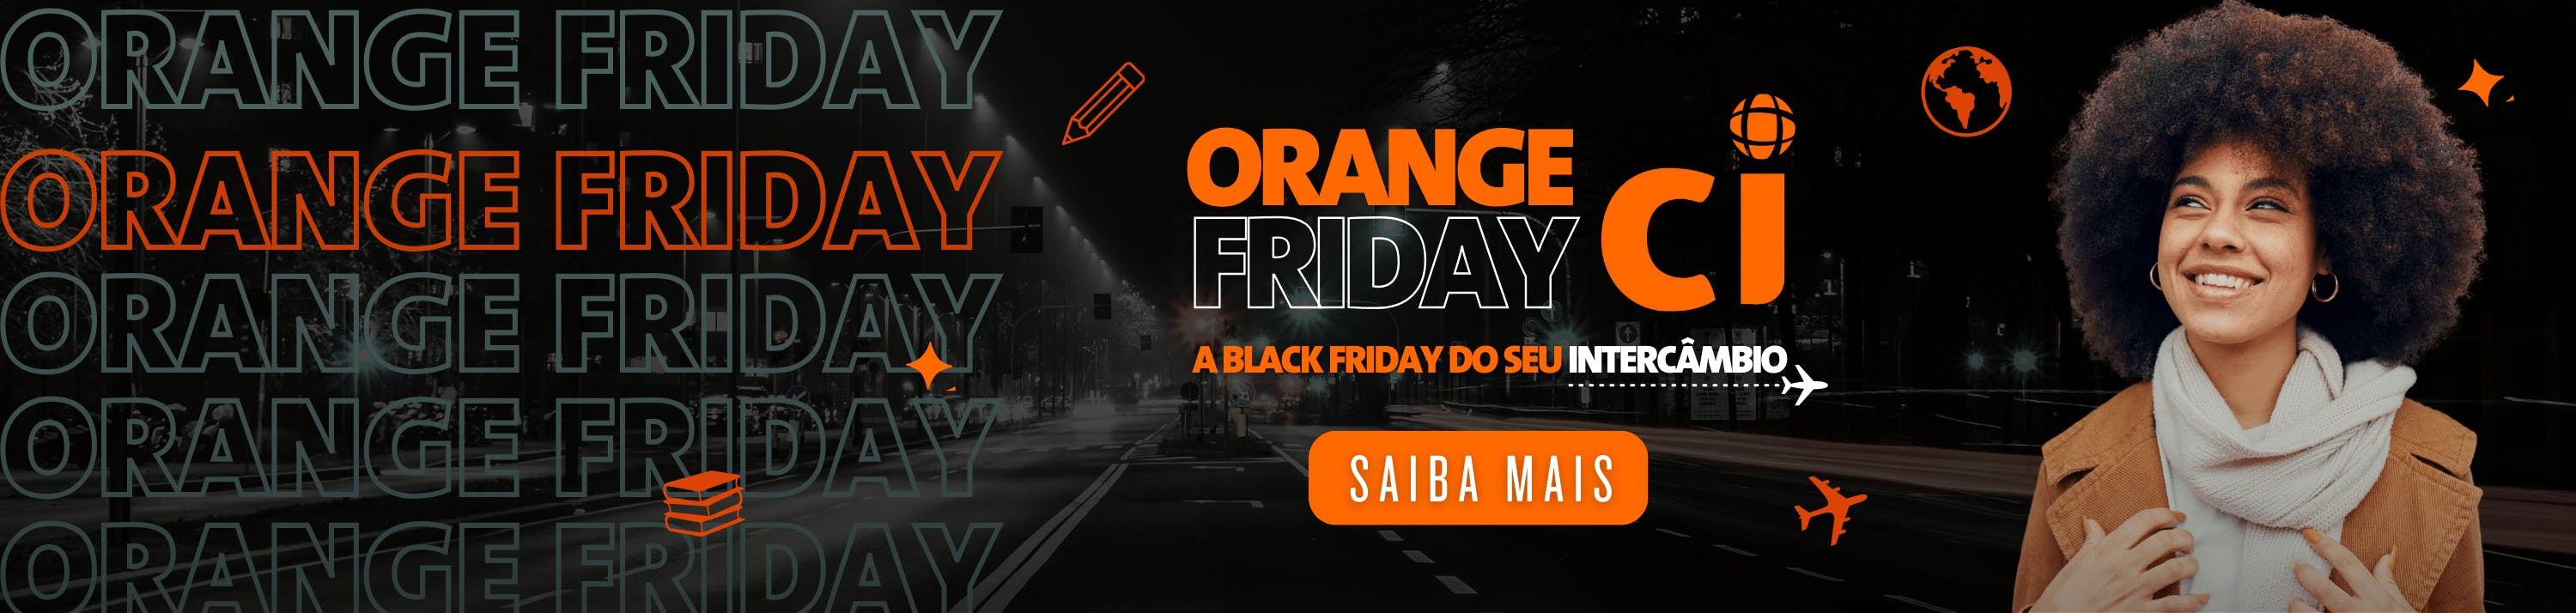 1 - Orange Friday 23